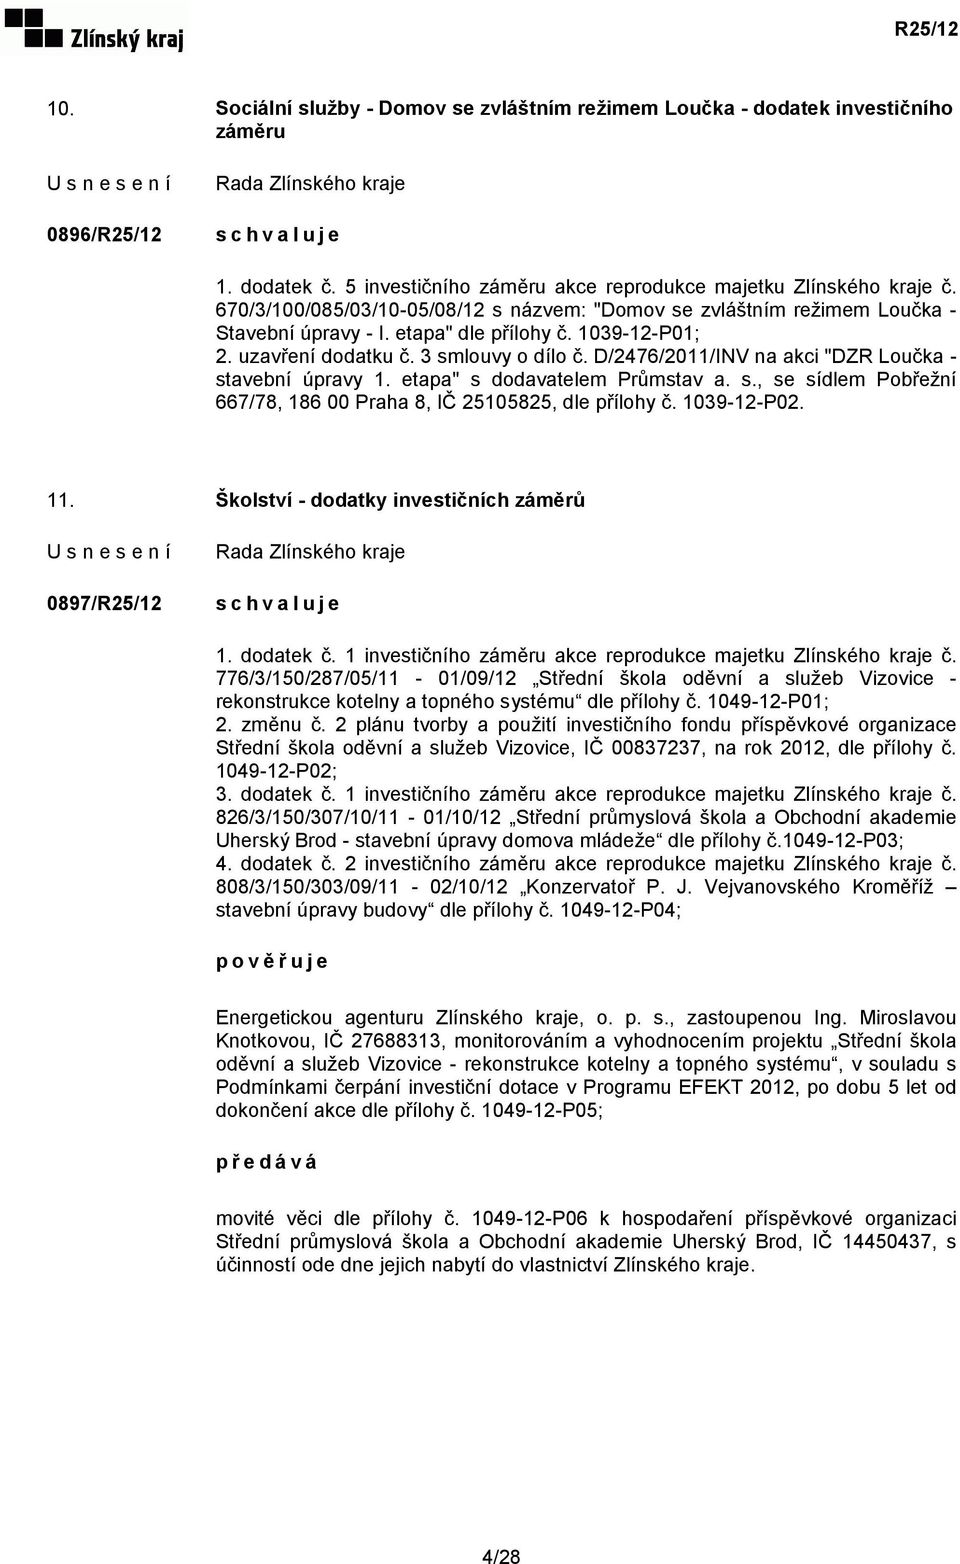 D/2476/2011/INV na akci "DZR Loučka - stavební úpravy 1. etapa" s dodavatelem Průmstav a. s., se sídlem Pobřežní 667/78, 186 00 Praha 8, IČ 25105825, dle přílohy č. 1039-12-P02. 11.